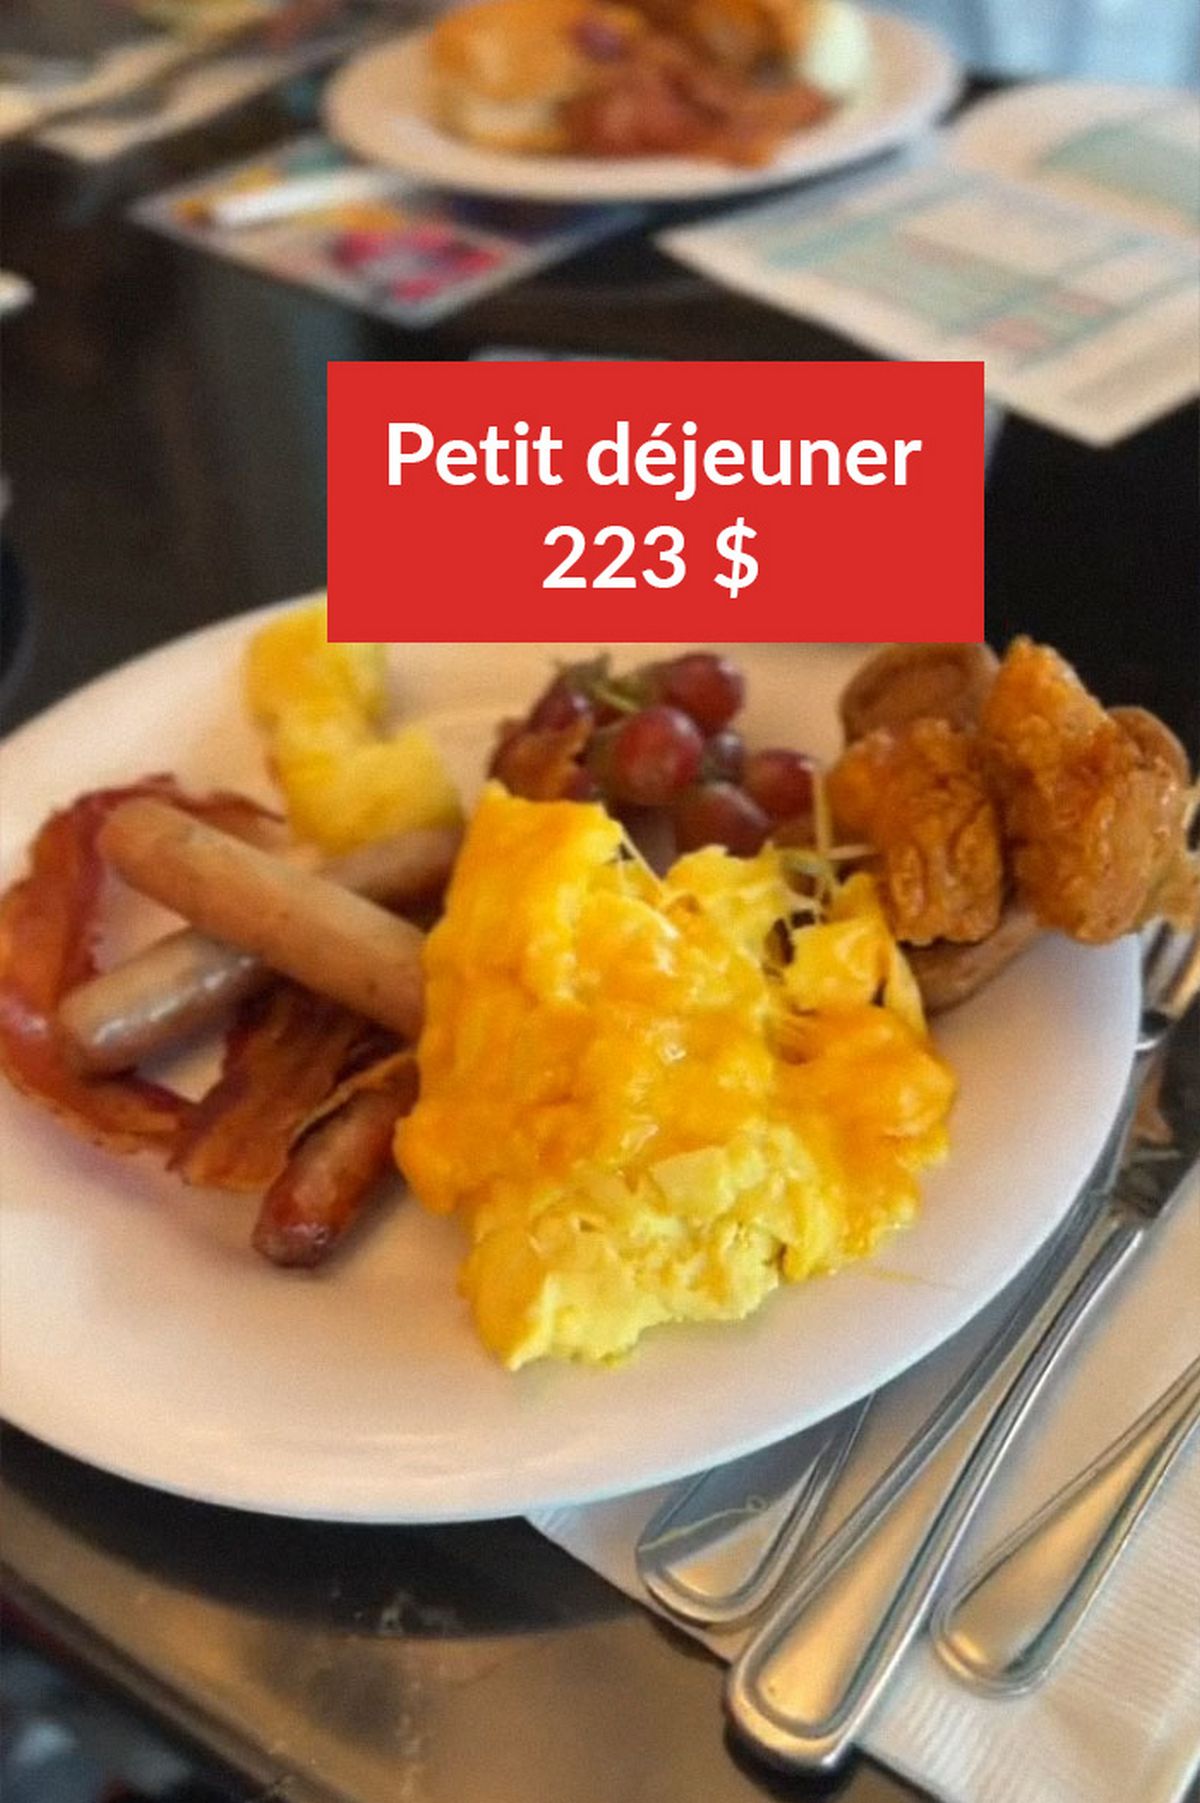 Petit déjeuner : 223 $ (212 €)